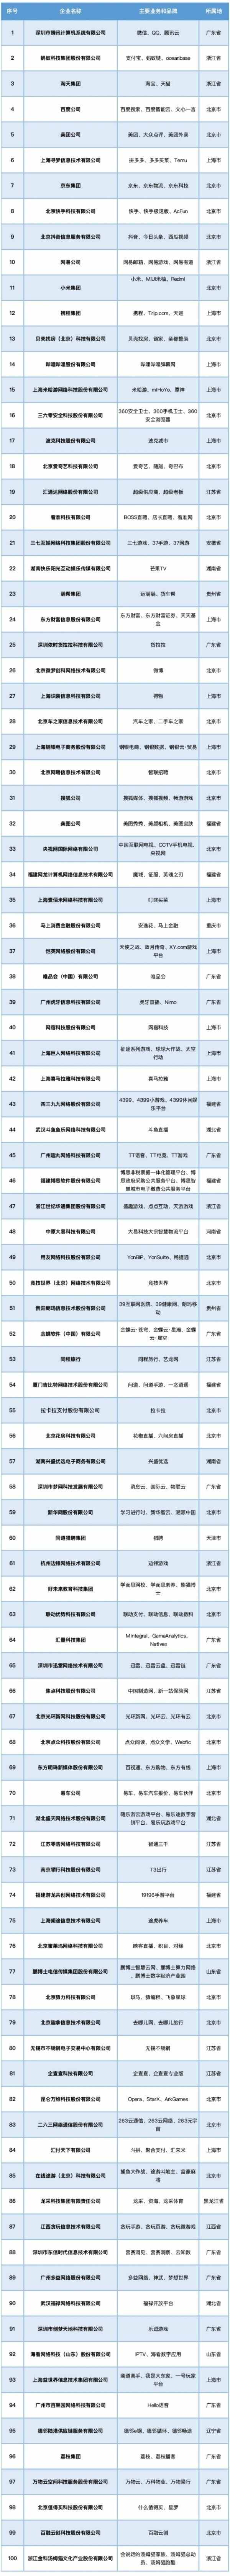 互联网企业100强分布：上海17家，广东15家，浙江福建各6家